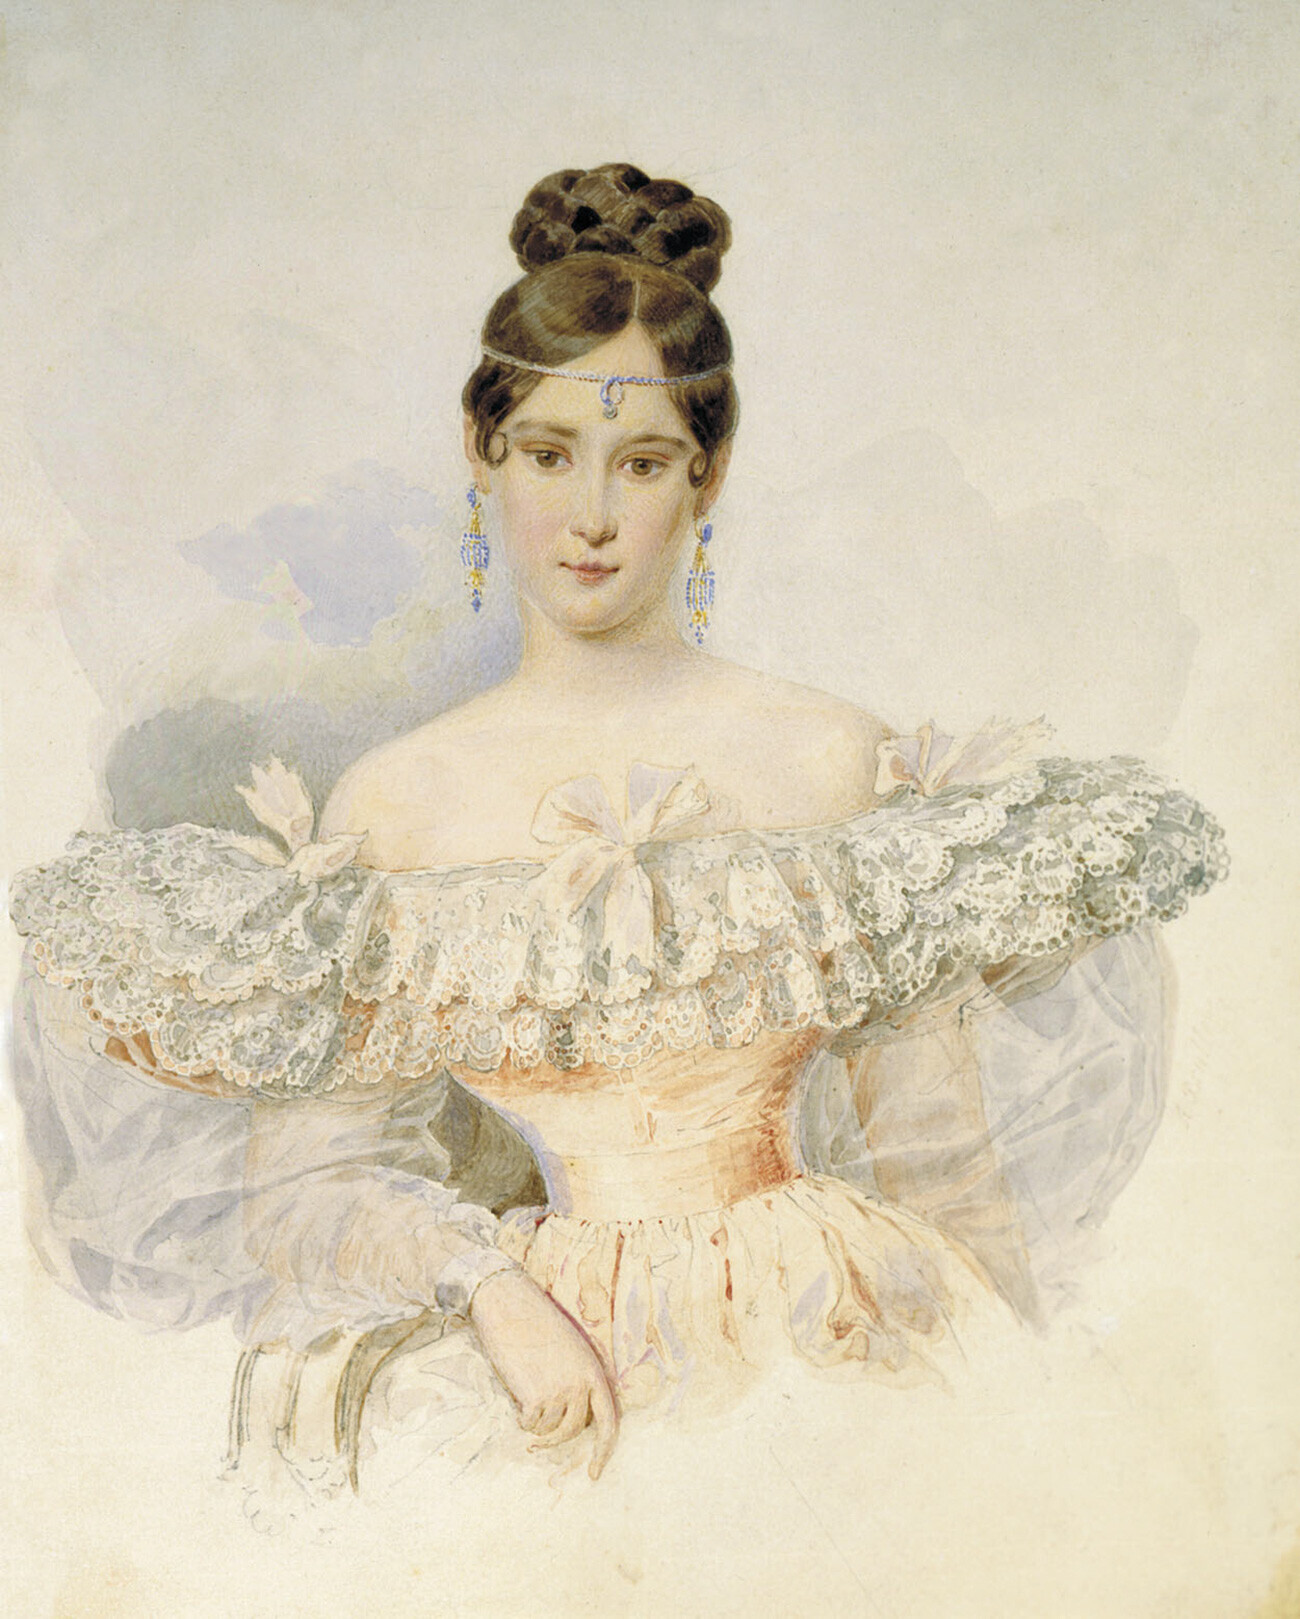 Retrato de Natalia Nikolaevna Púchkina-Lanskaia (nascida Gontcharova), por Aleksandr Briullov, 1831—1832. 

